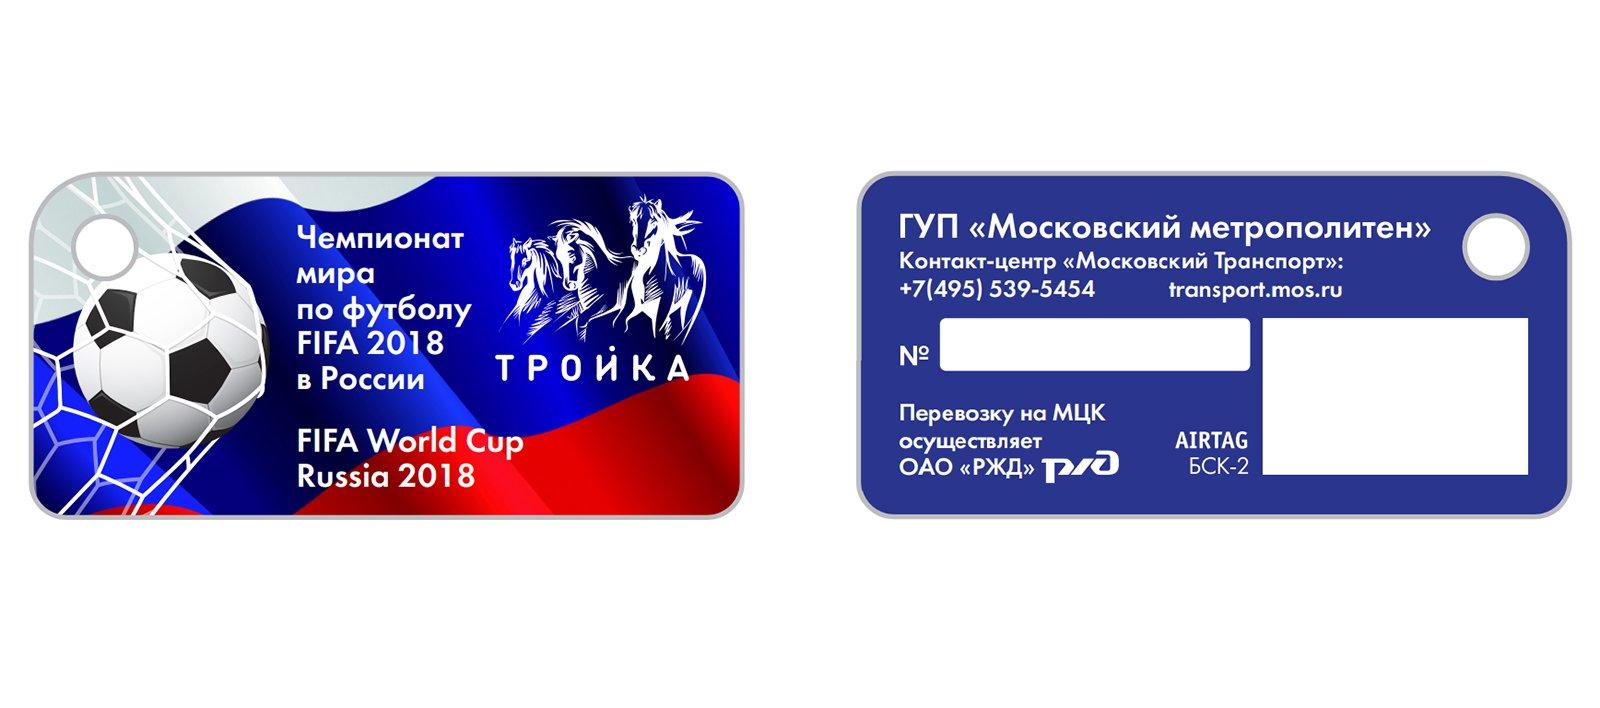 Карты и брелоки «Тройка» с футбольным дизайном появятся в метро к ЧМ-2018